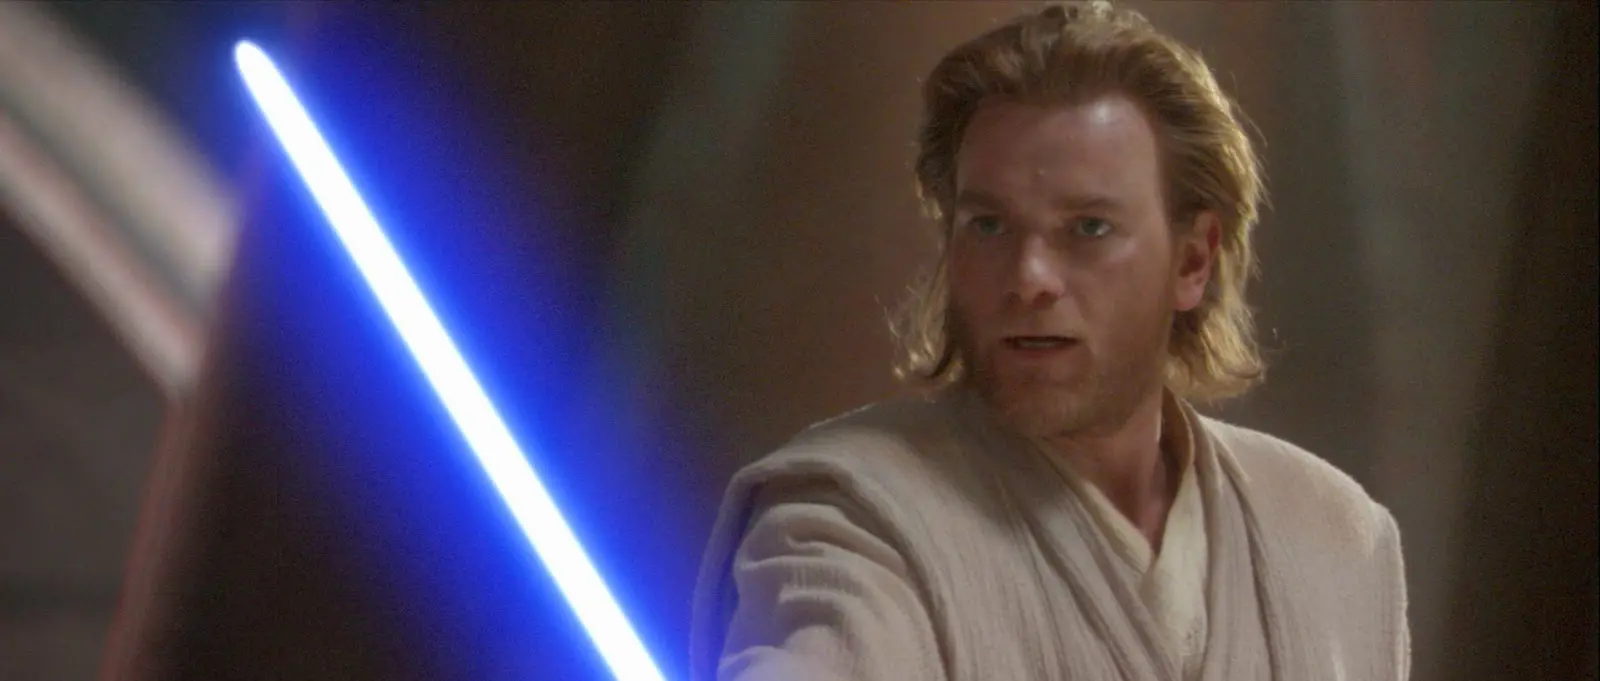 Fans Star Wars kini tengah mengumpulkan suara di situs resmi agar bisa mendorong Lucasfilm untuk mengembangkan proyek Obi-Wan Kenobi.